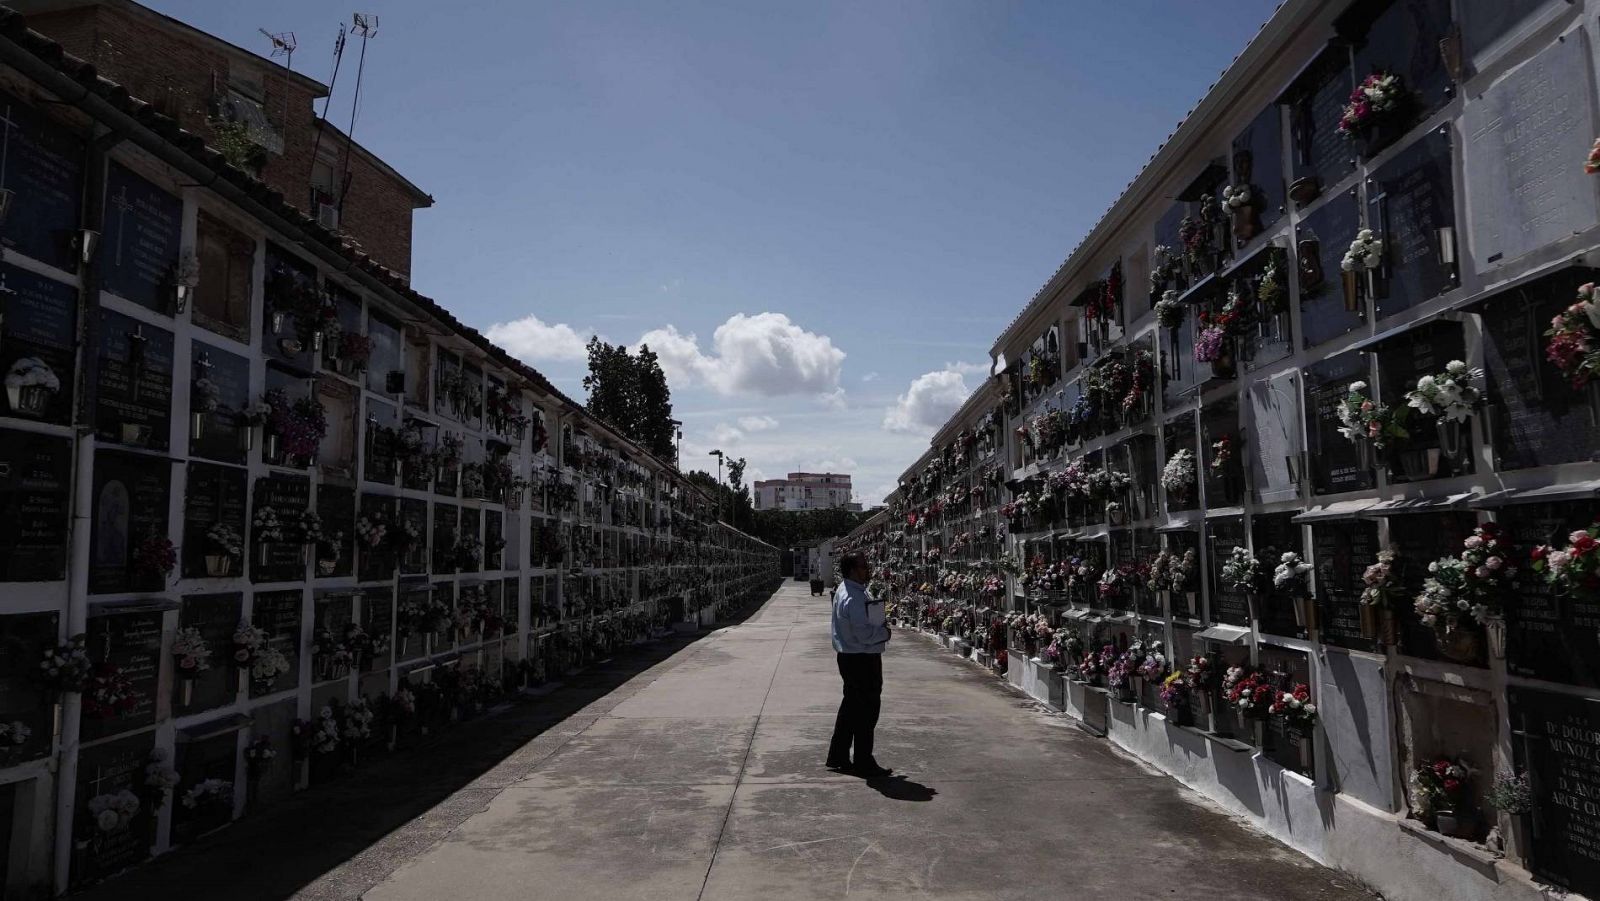 El cementerio de San Rafael, en Córdoba, recibe sus primeros visitantes tras el confinamiento por el coronavirus